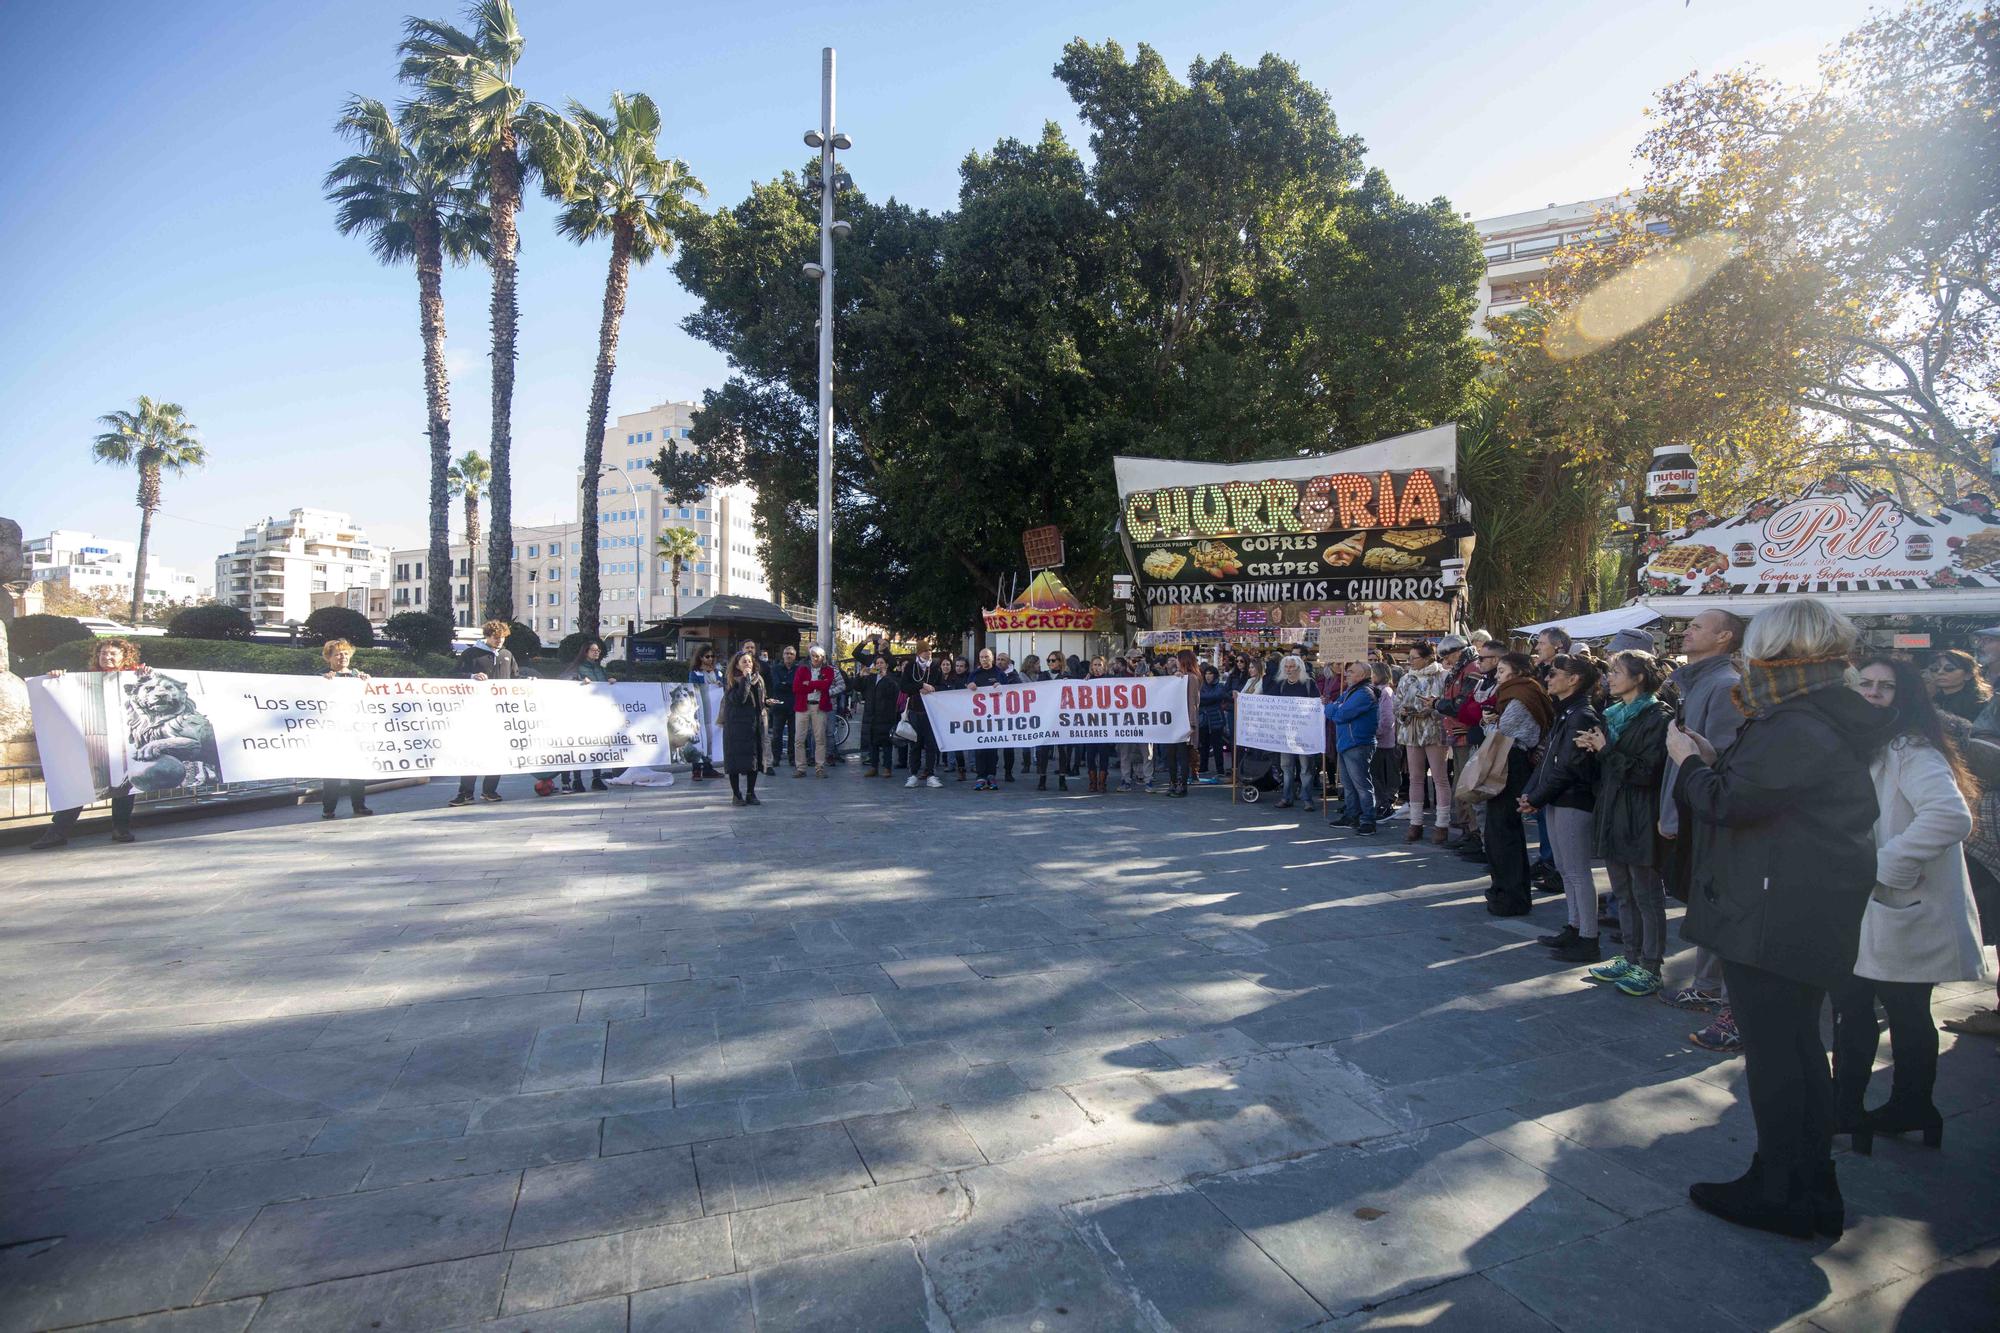 Más de 300 antivacunas se concentran en Palma contra el pasaporte covid